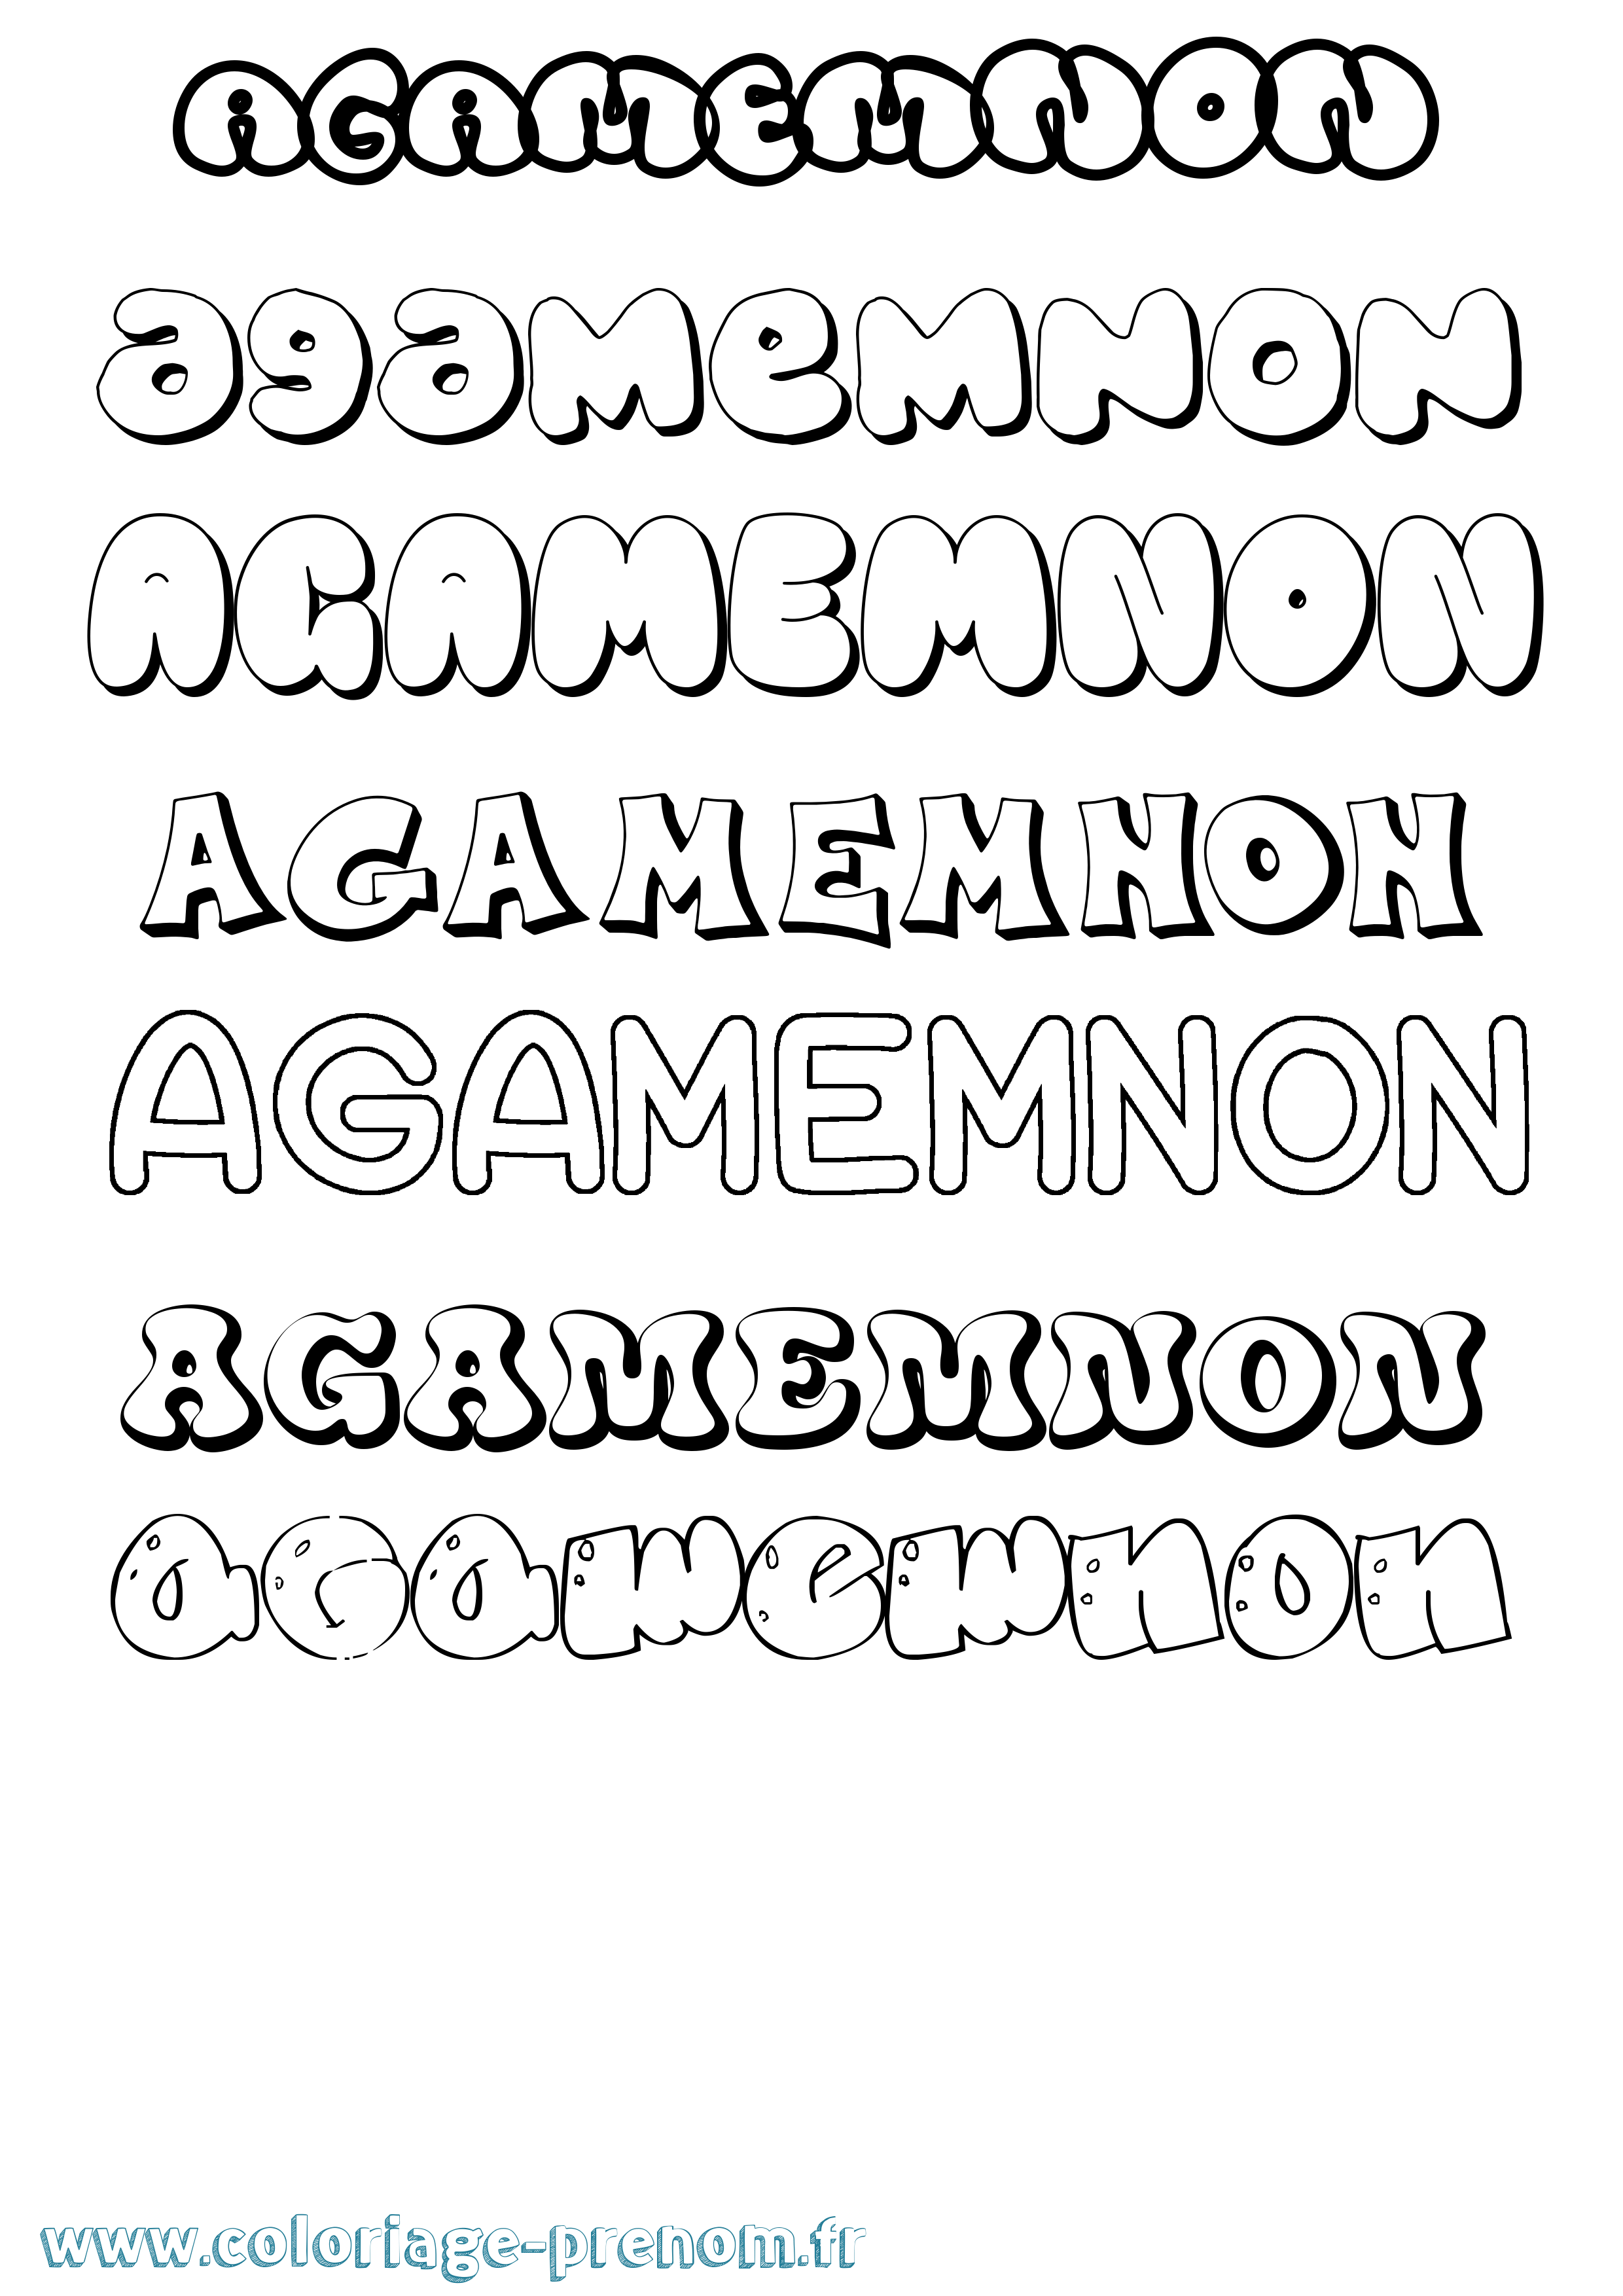 Coloriage prénom Agamemnon Bubble